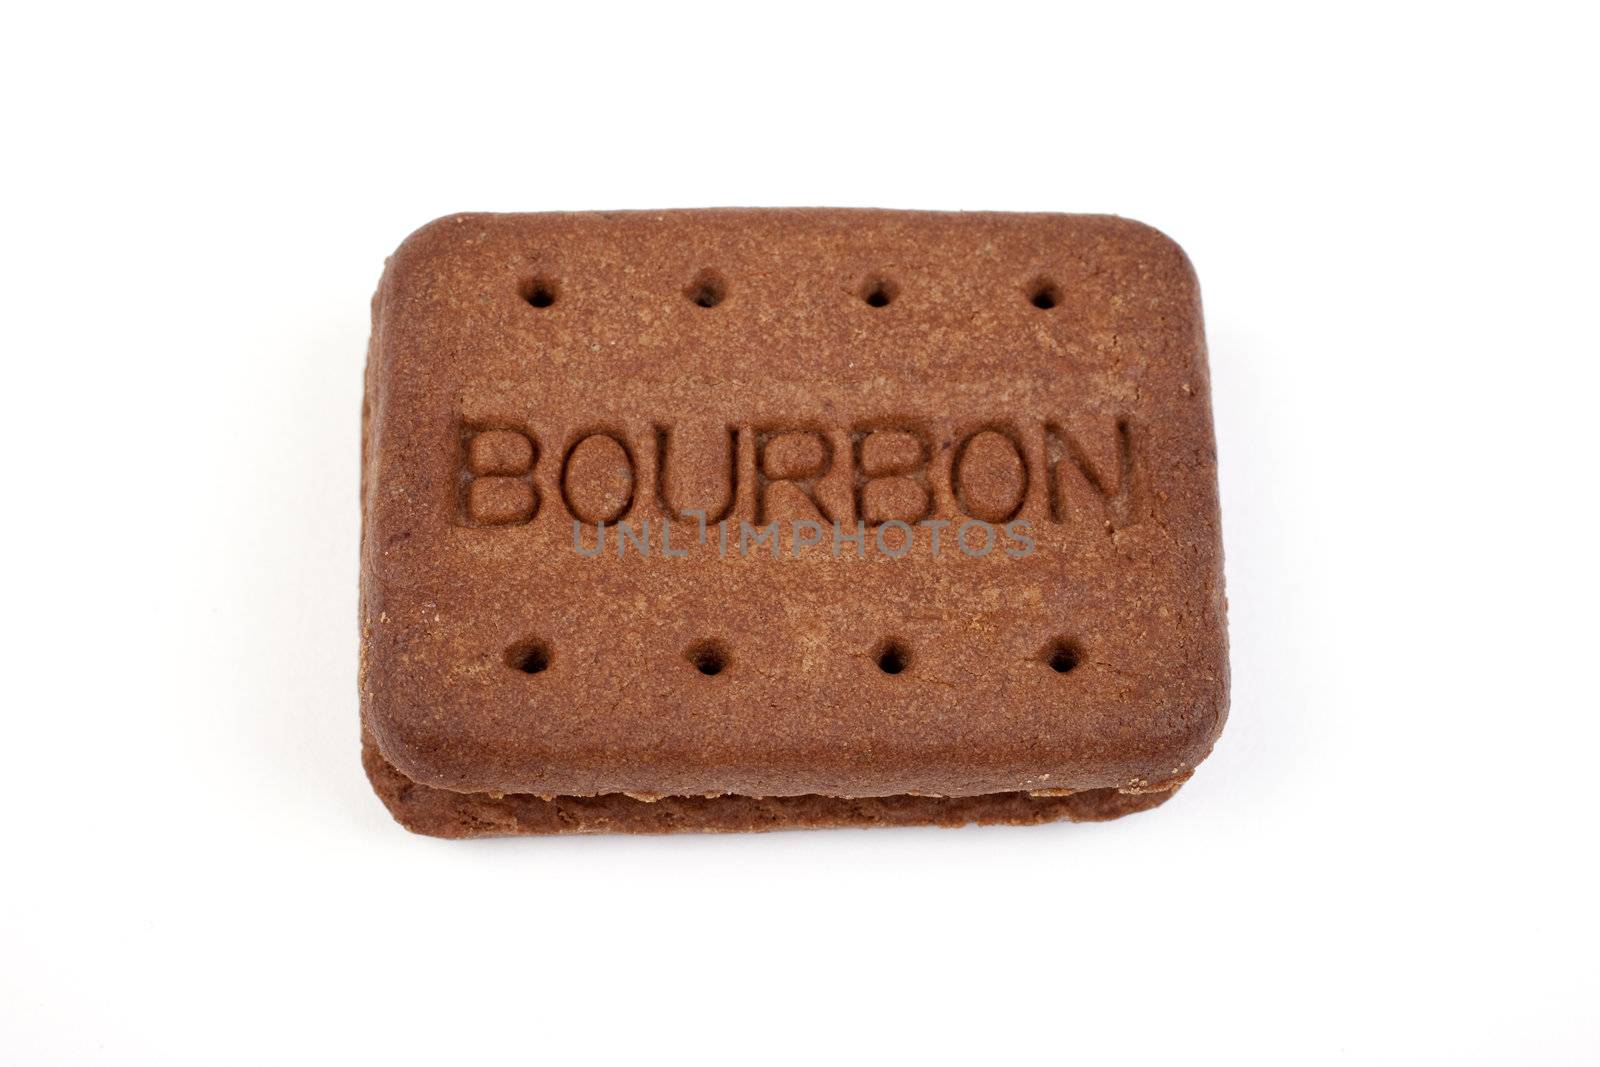 Bourbon Biscuit by chrisdorney